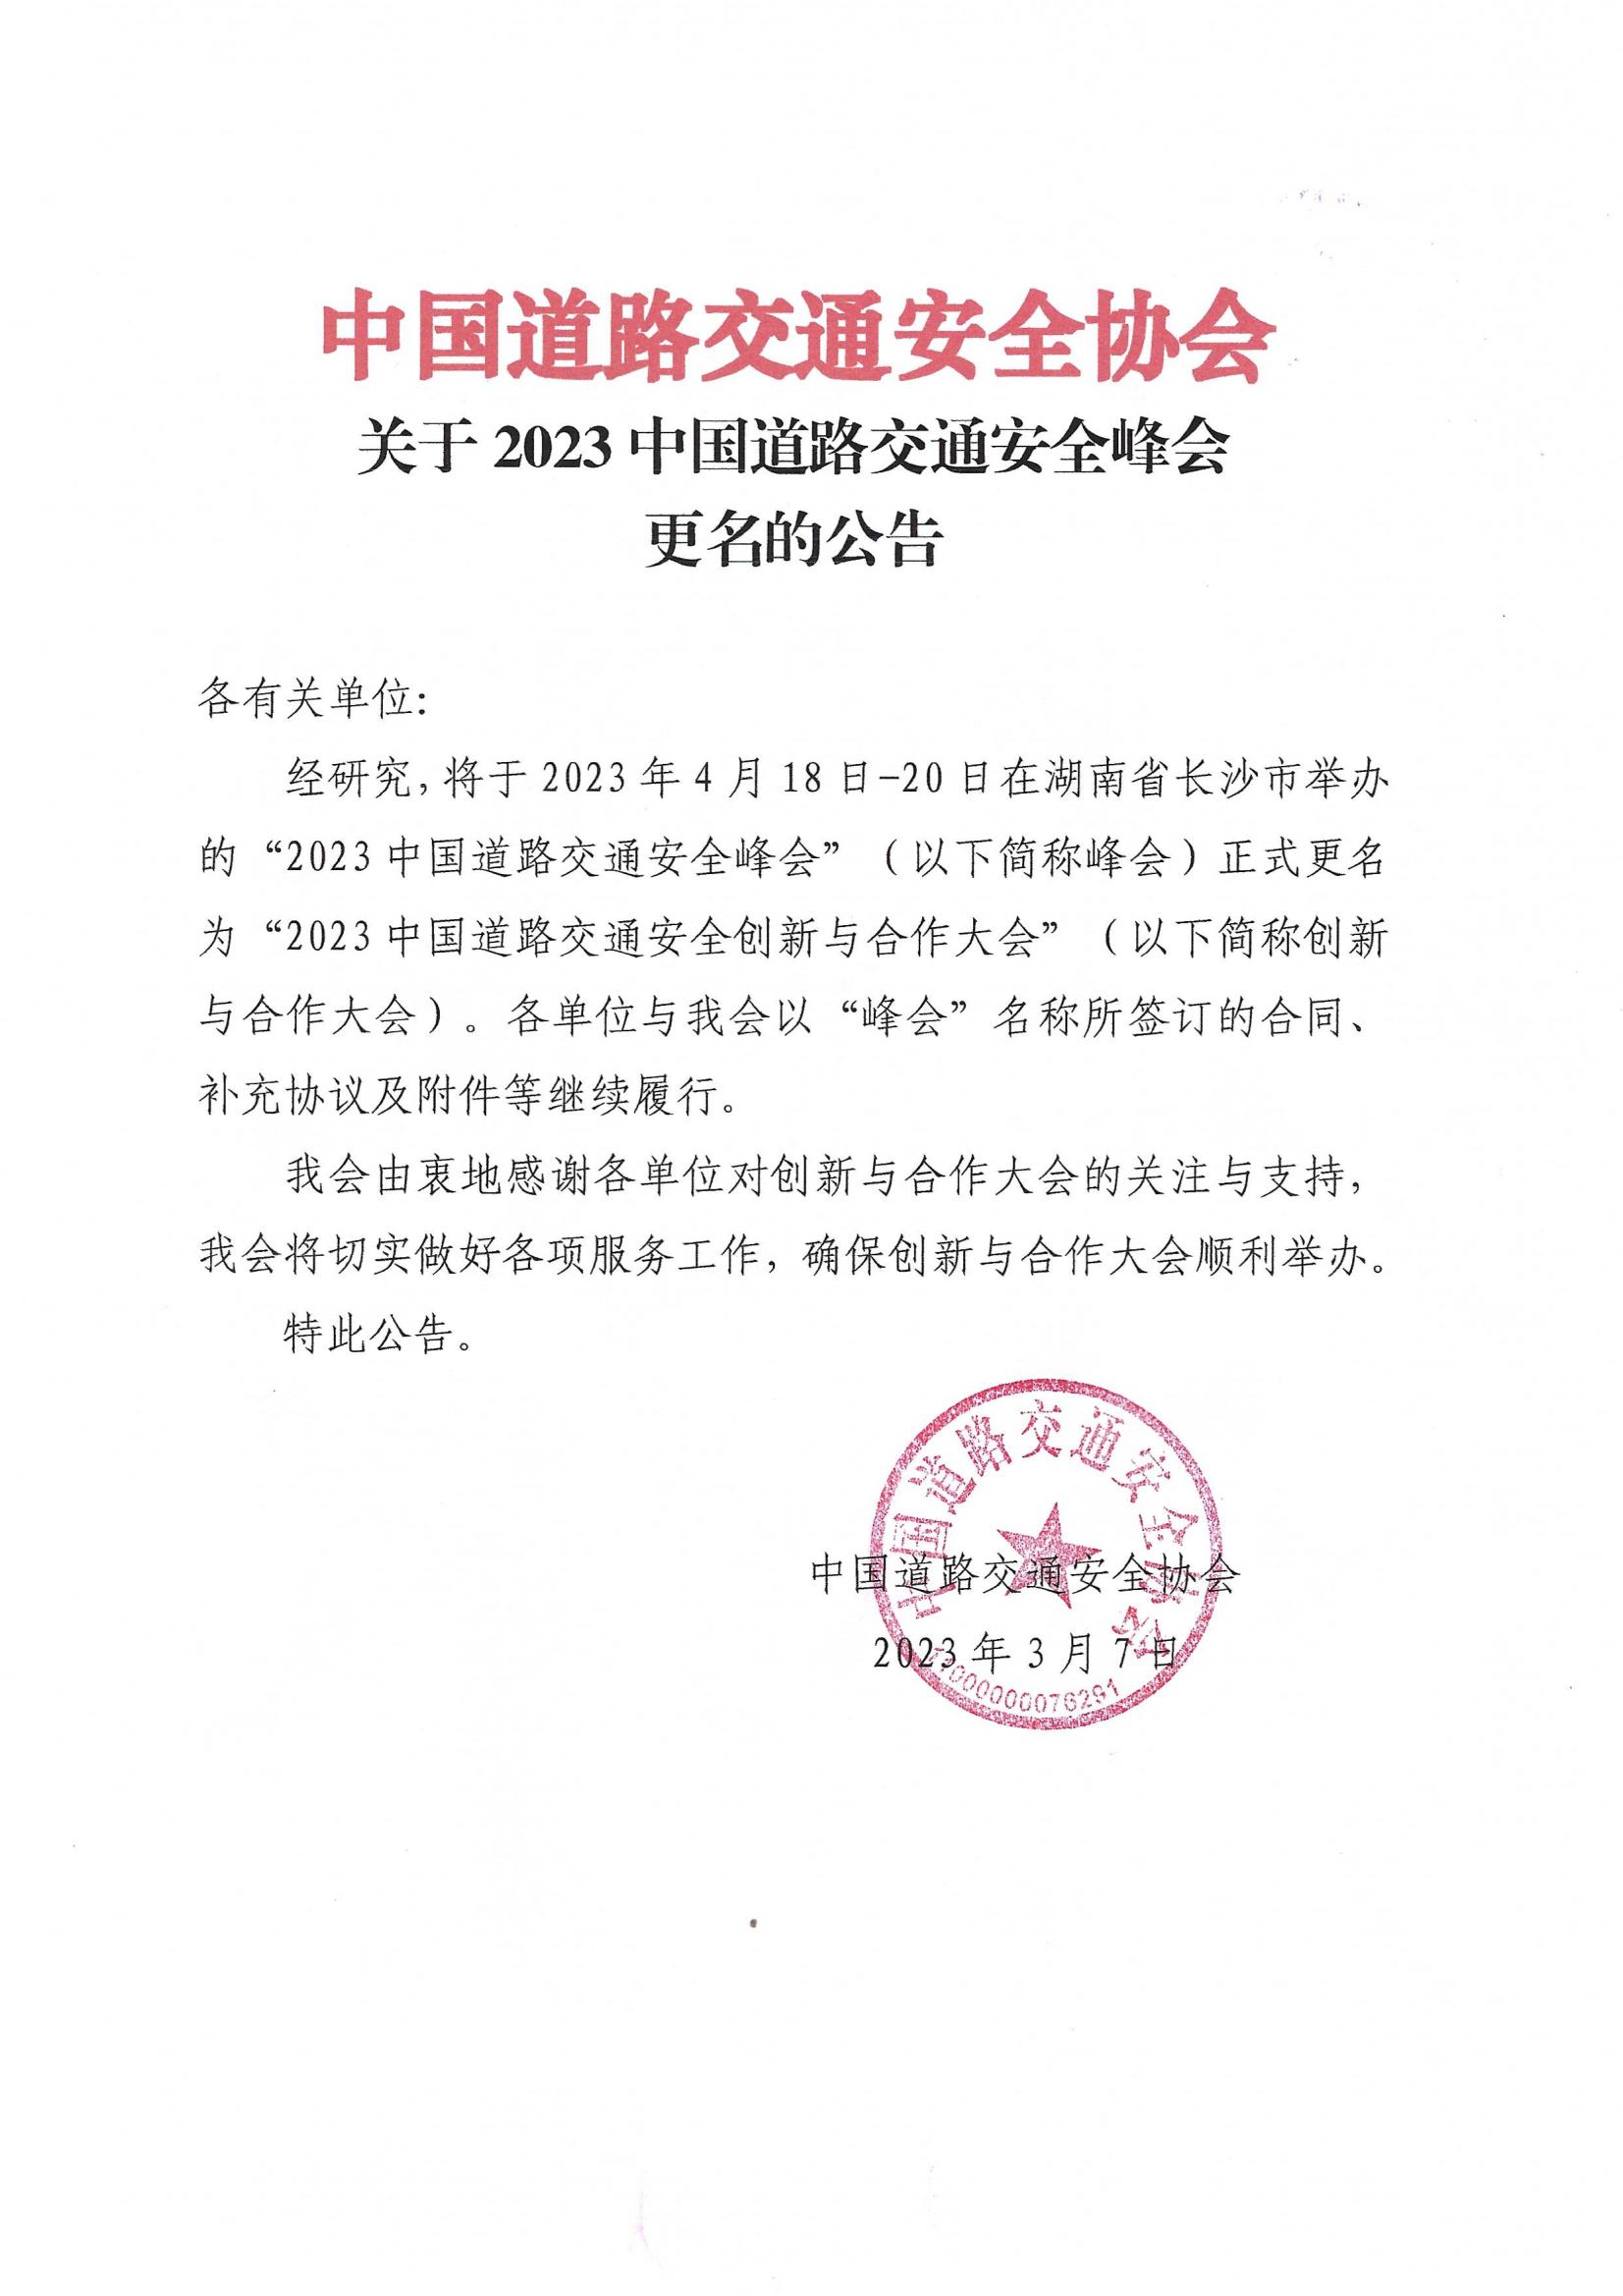 关于2023中国道路交通安全峰会更名的公告_00.jpg